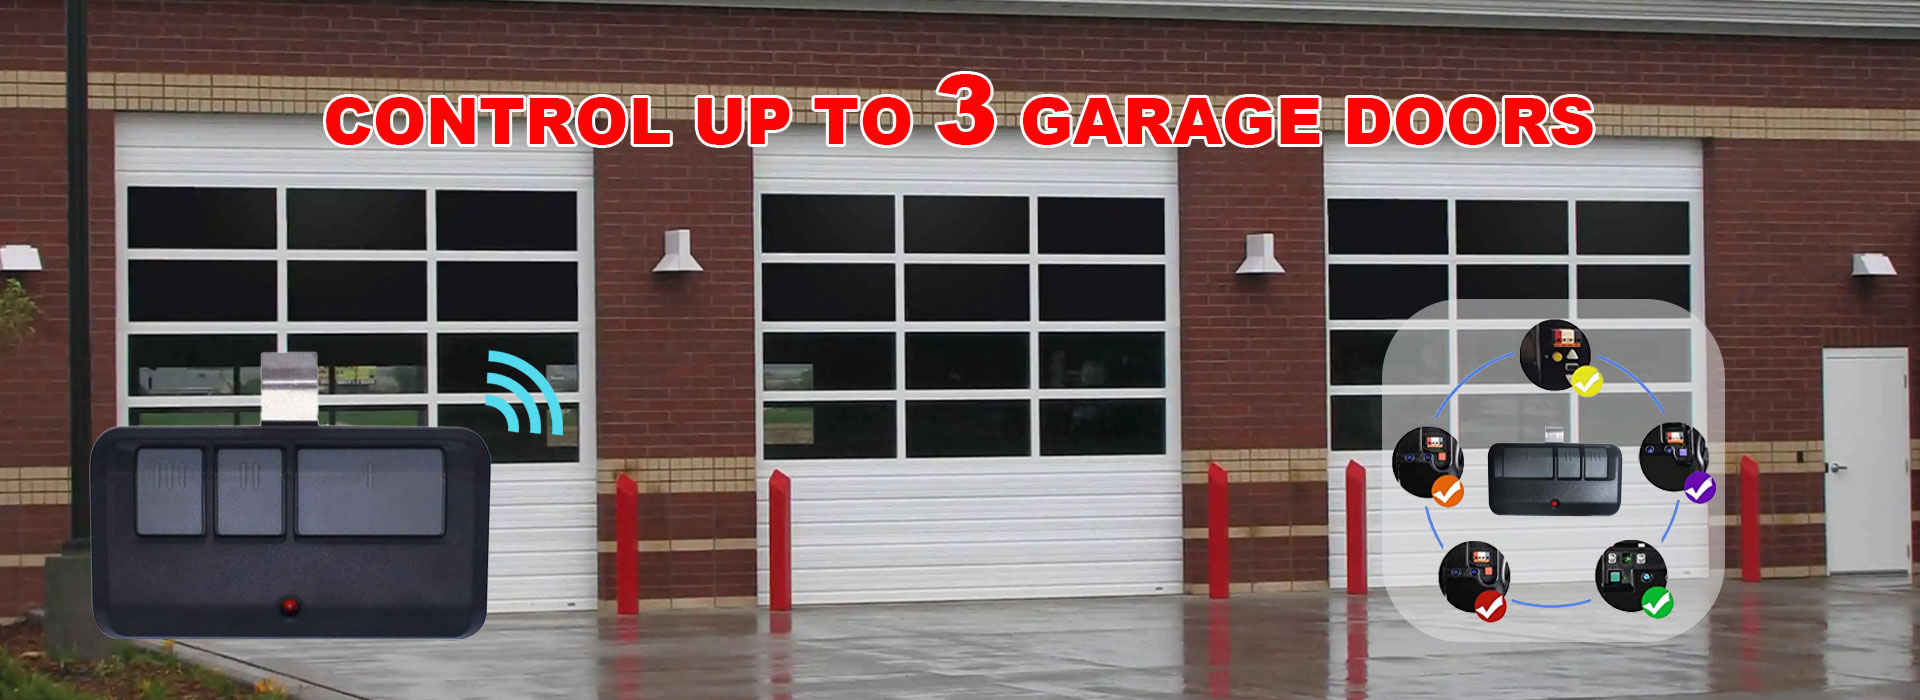 For Liftmaster 893MAX garage door remote